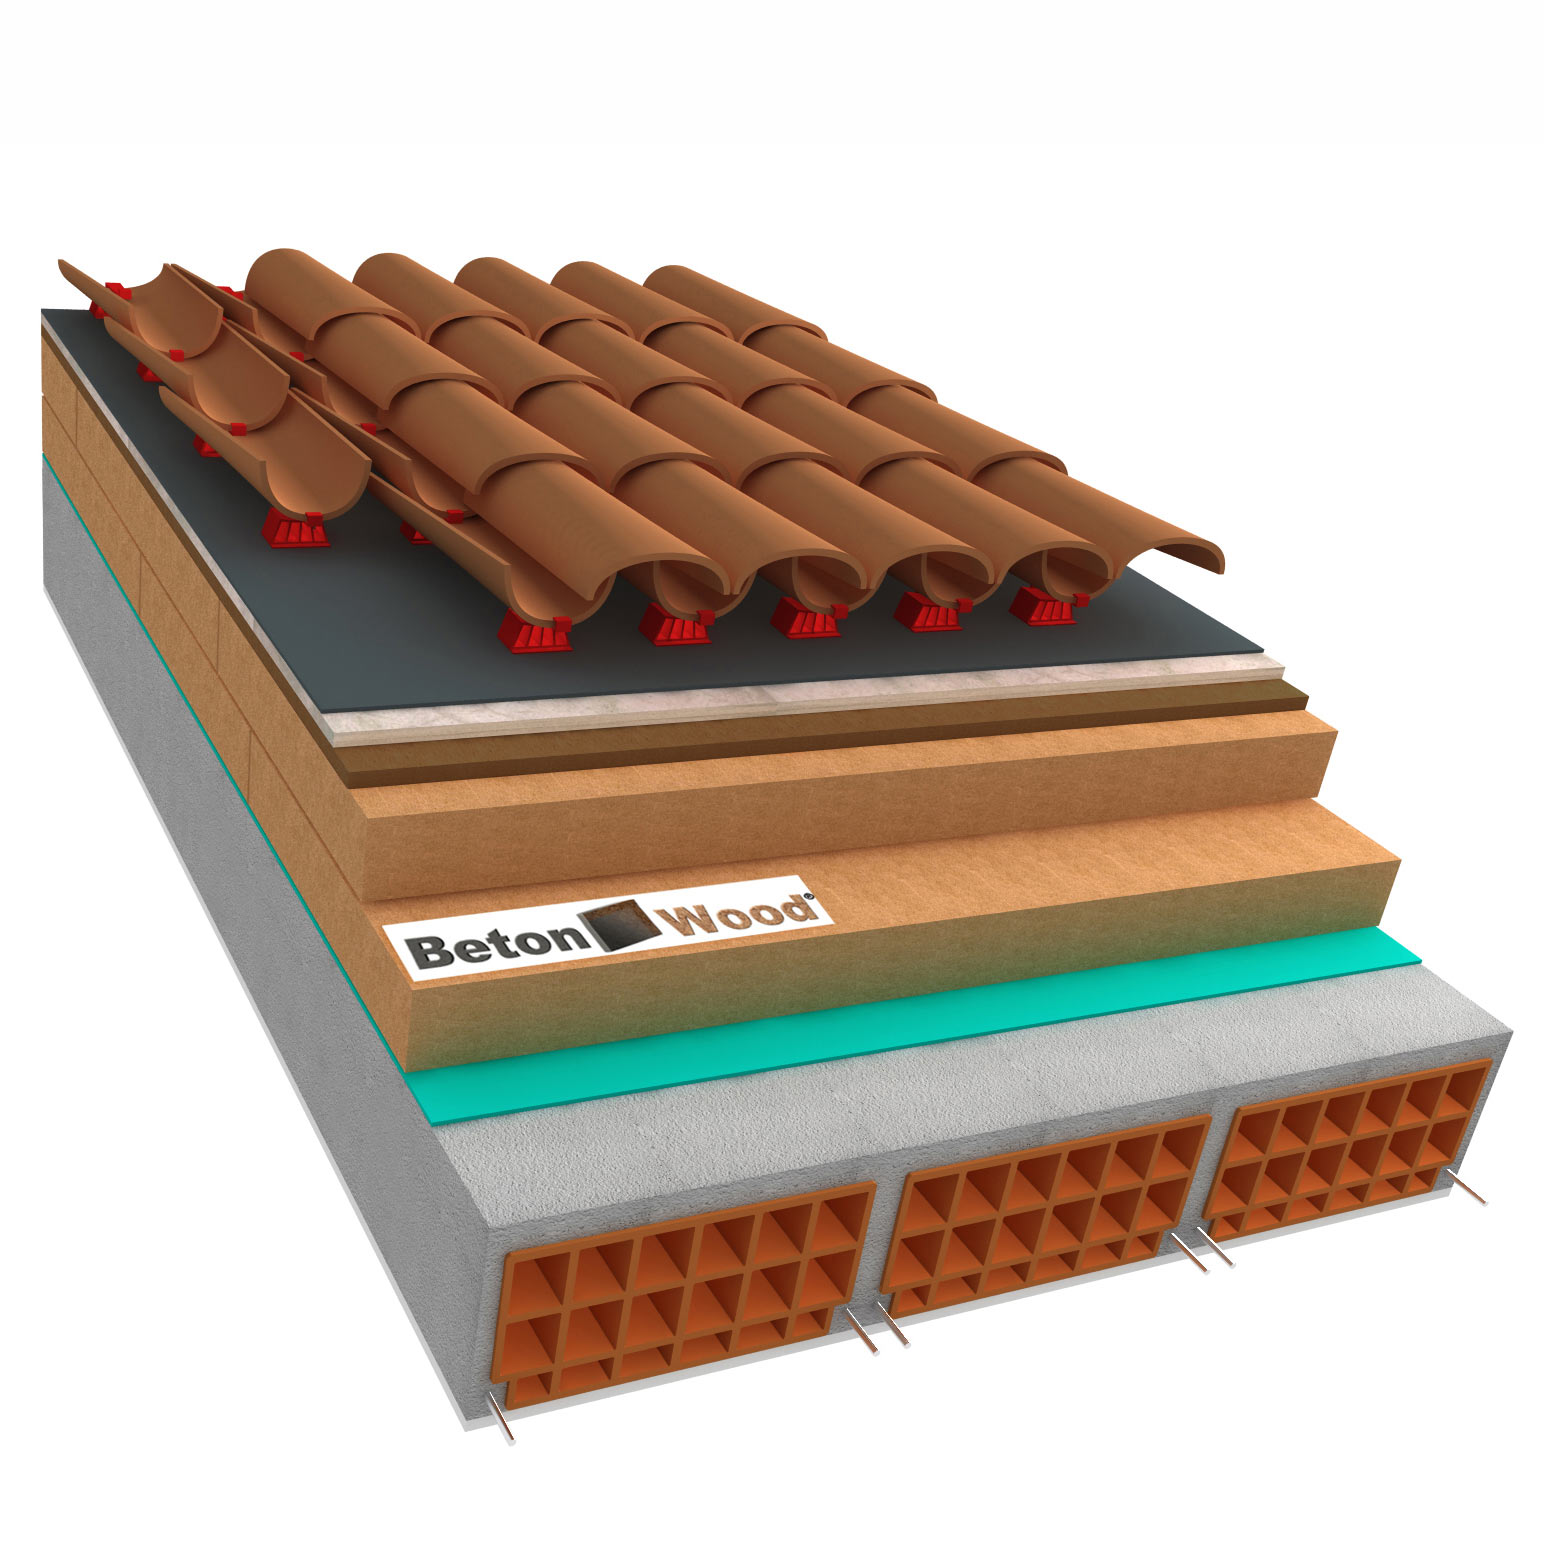 Fiber wood, Bitumfiber and BetonWood concrete roof